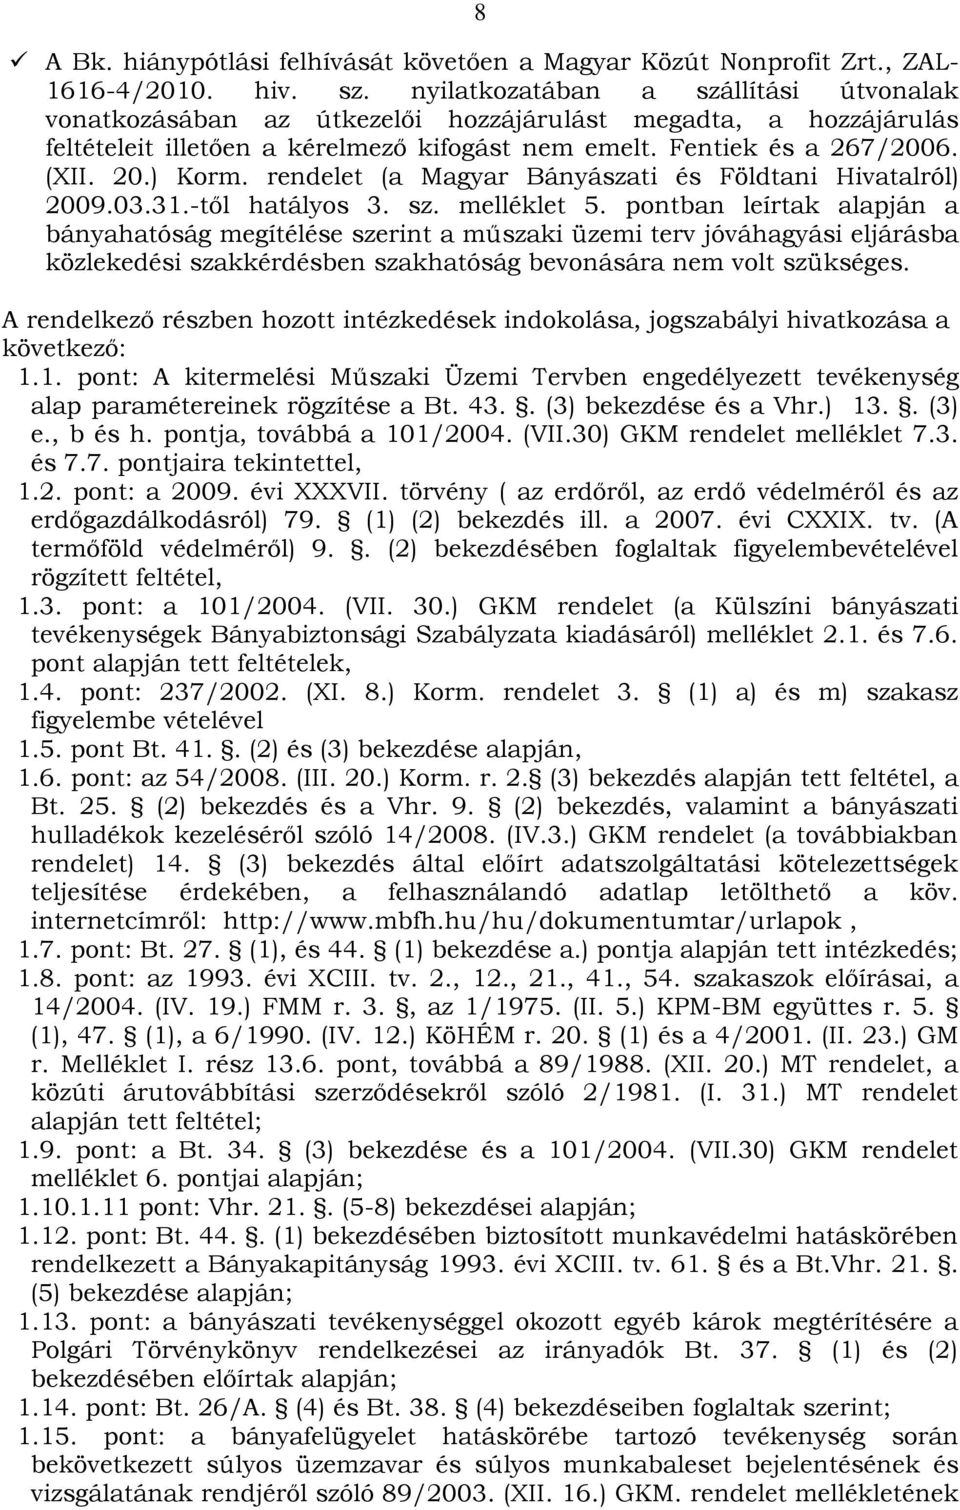 rendelet (a Magyar Bányászati és Földtani Hivatalról) 2009.03.31.-től hatályos 3. sz. melléklet 5.